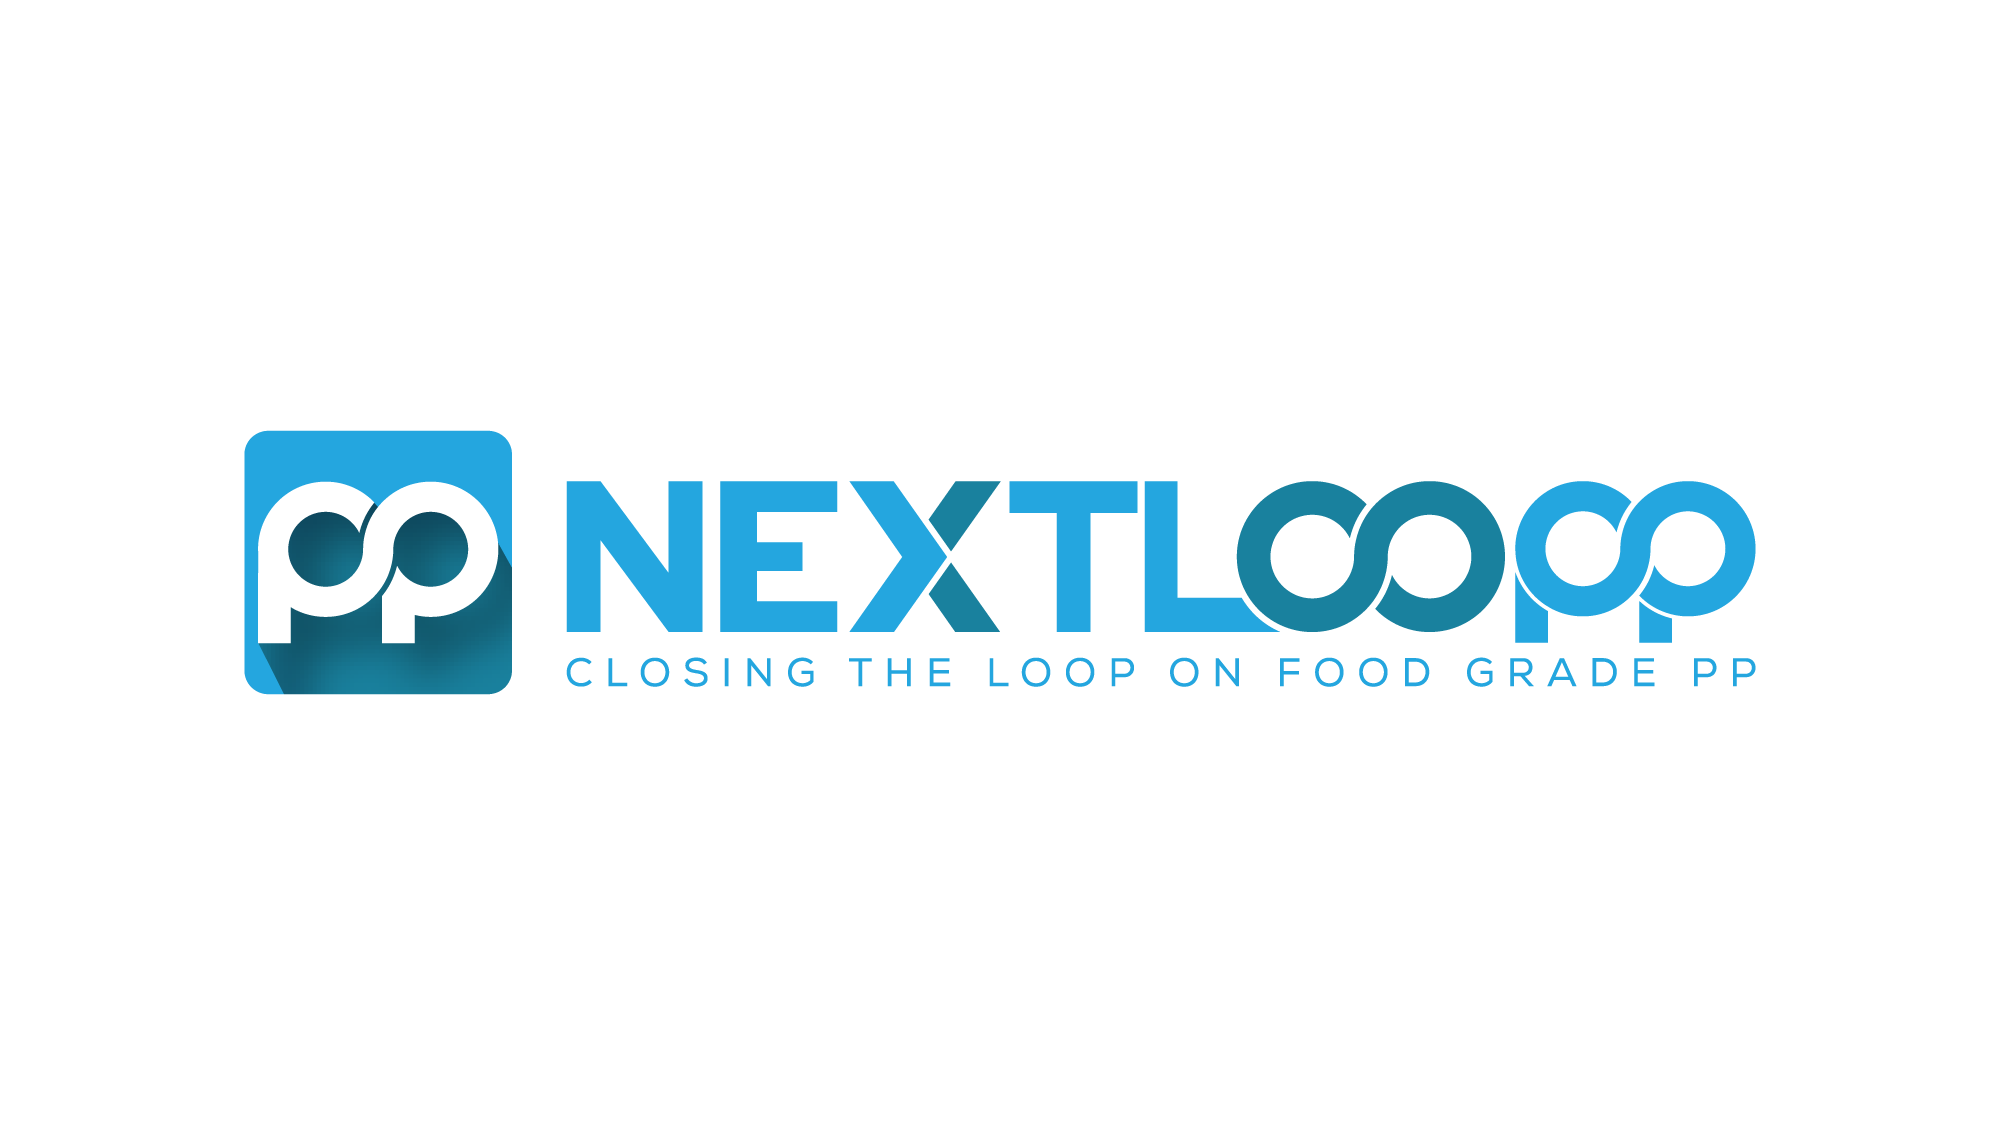 NextLoopp.png